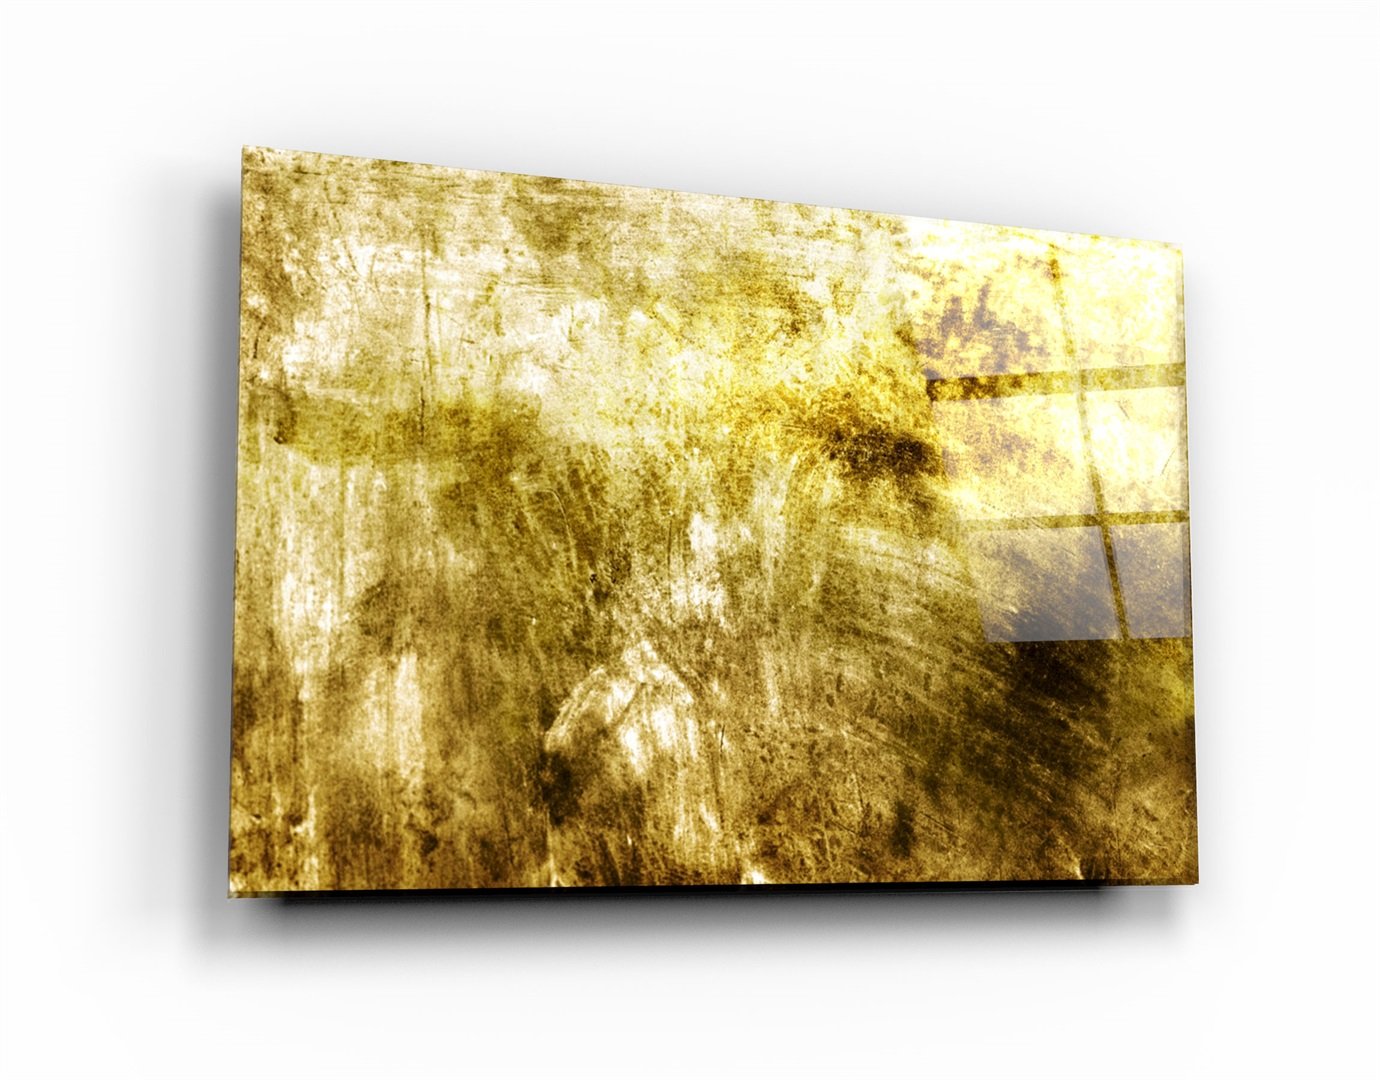 ・"Yellow Abstract Pattern"・Glass Wall Art